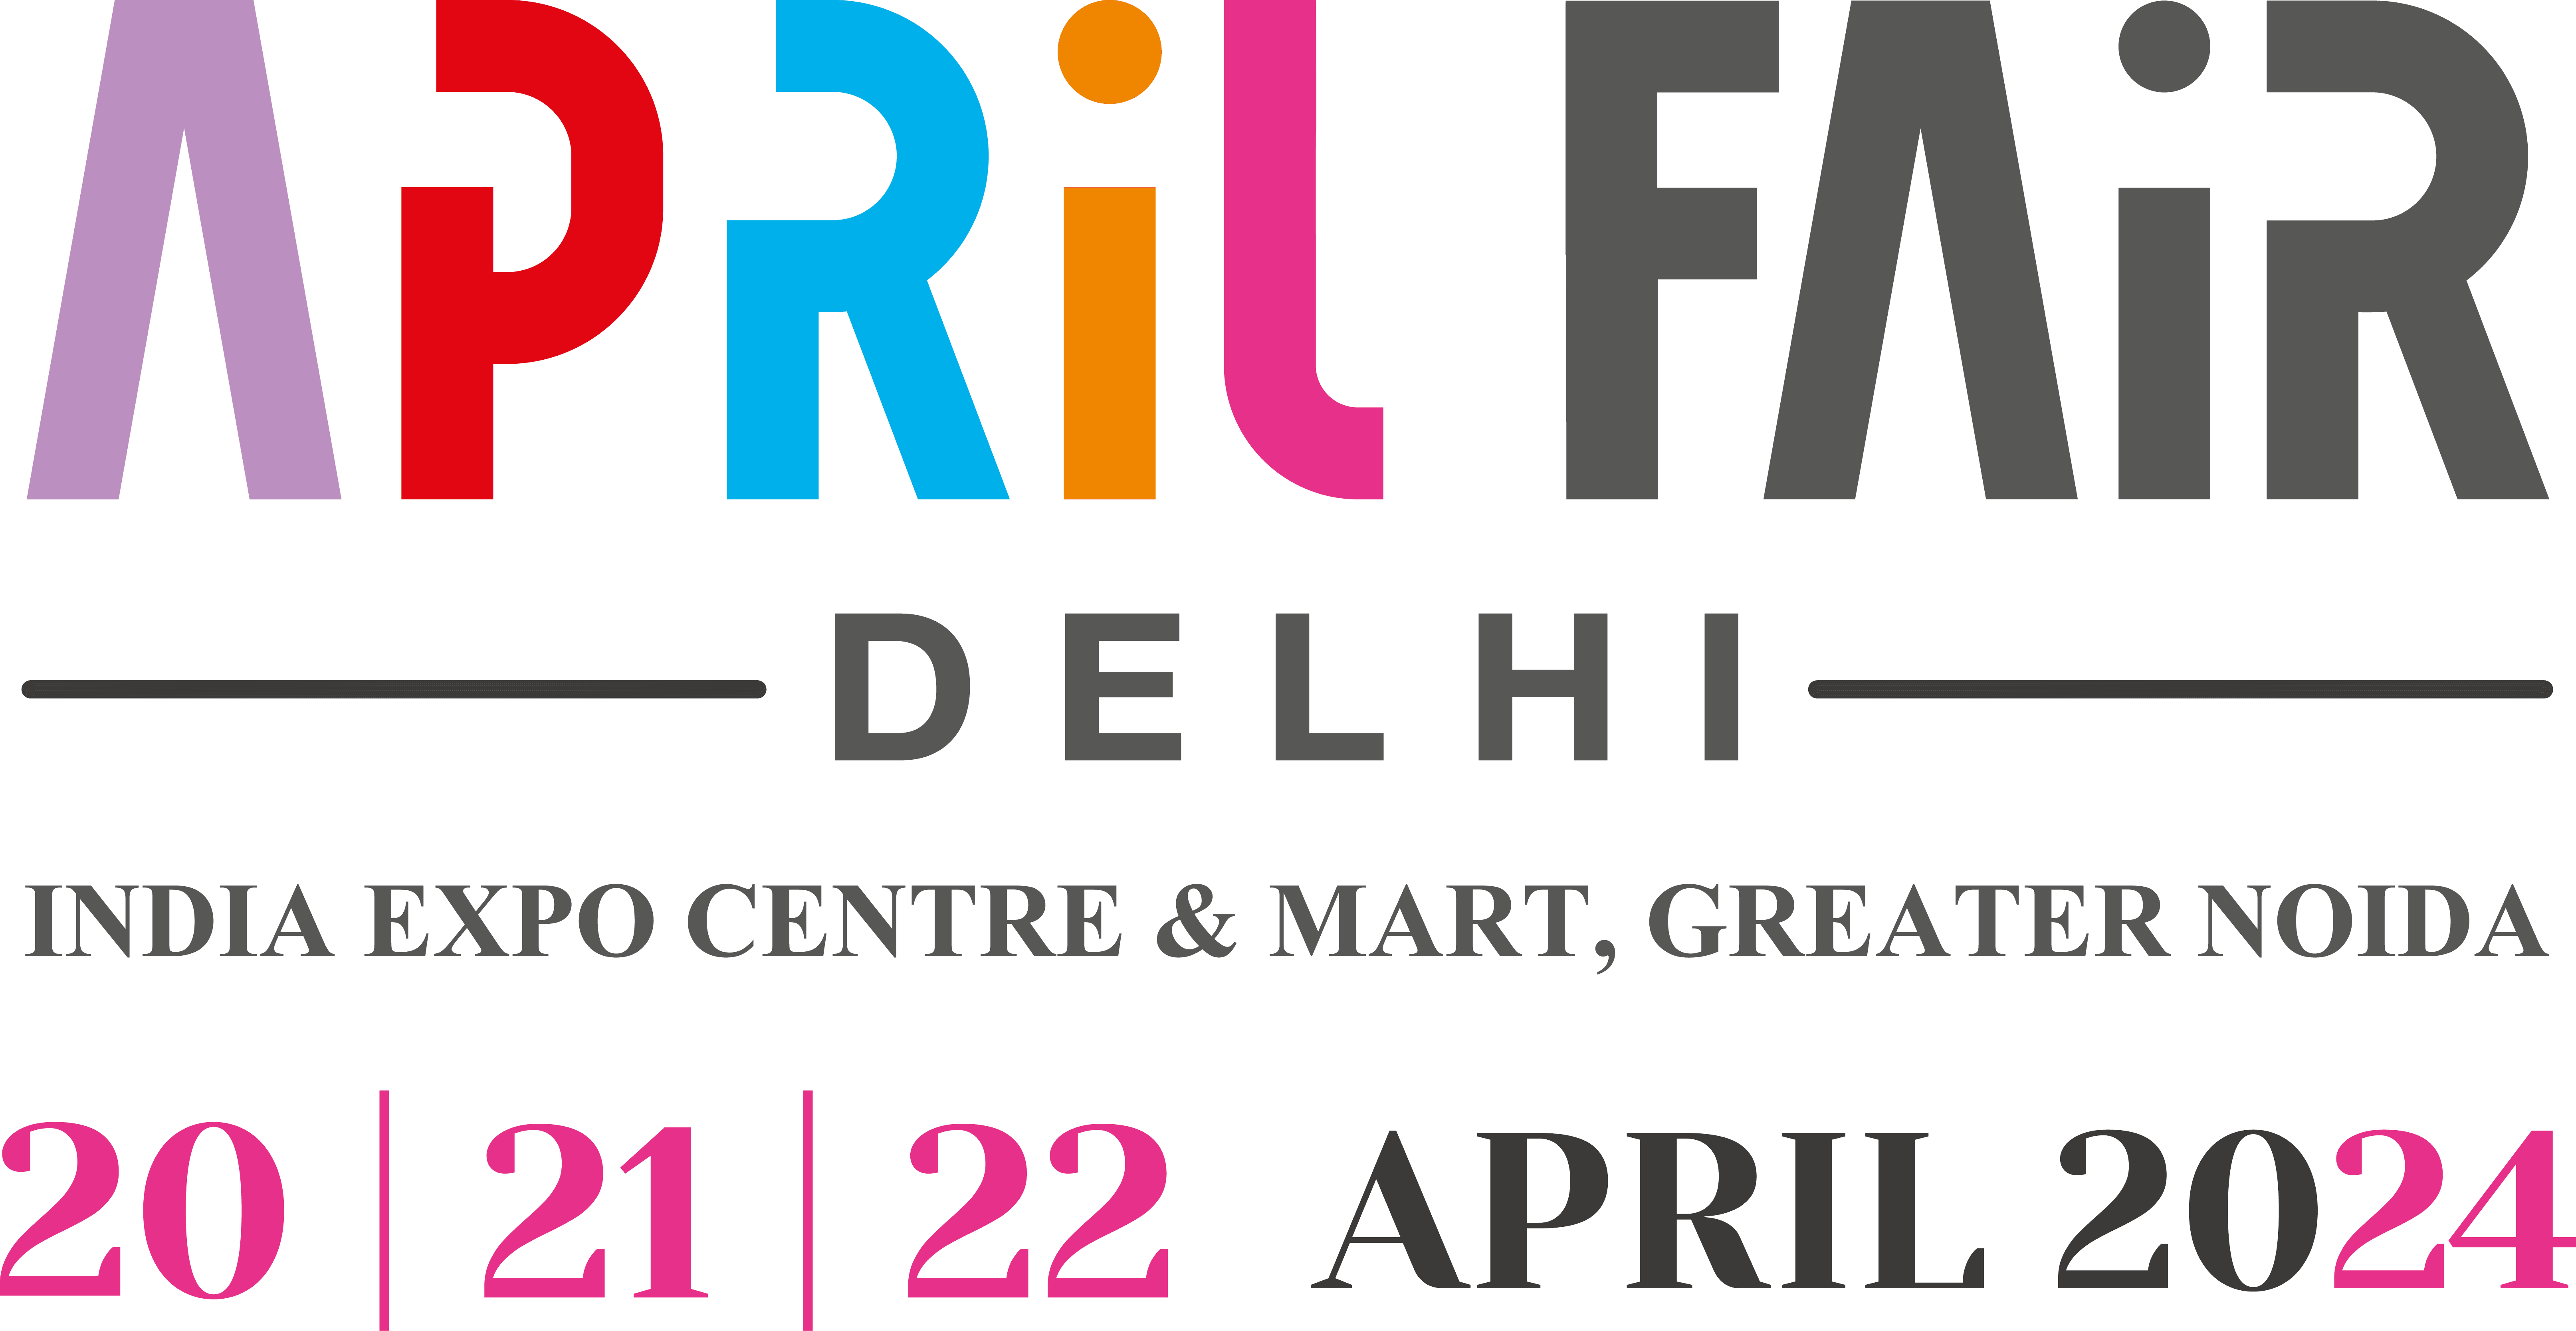 April Fair Delhi